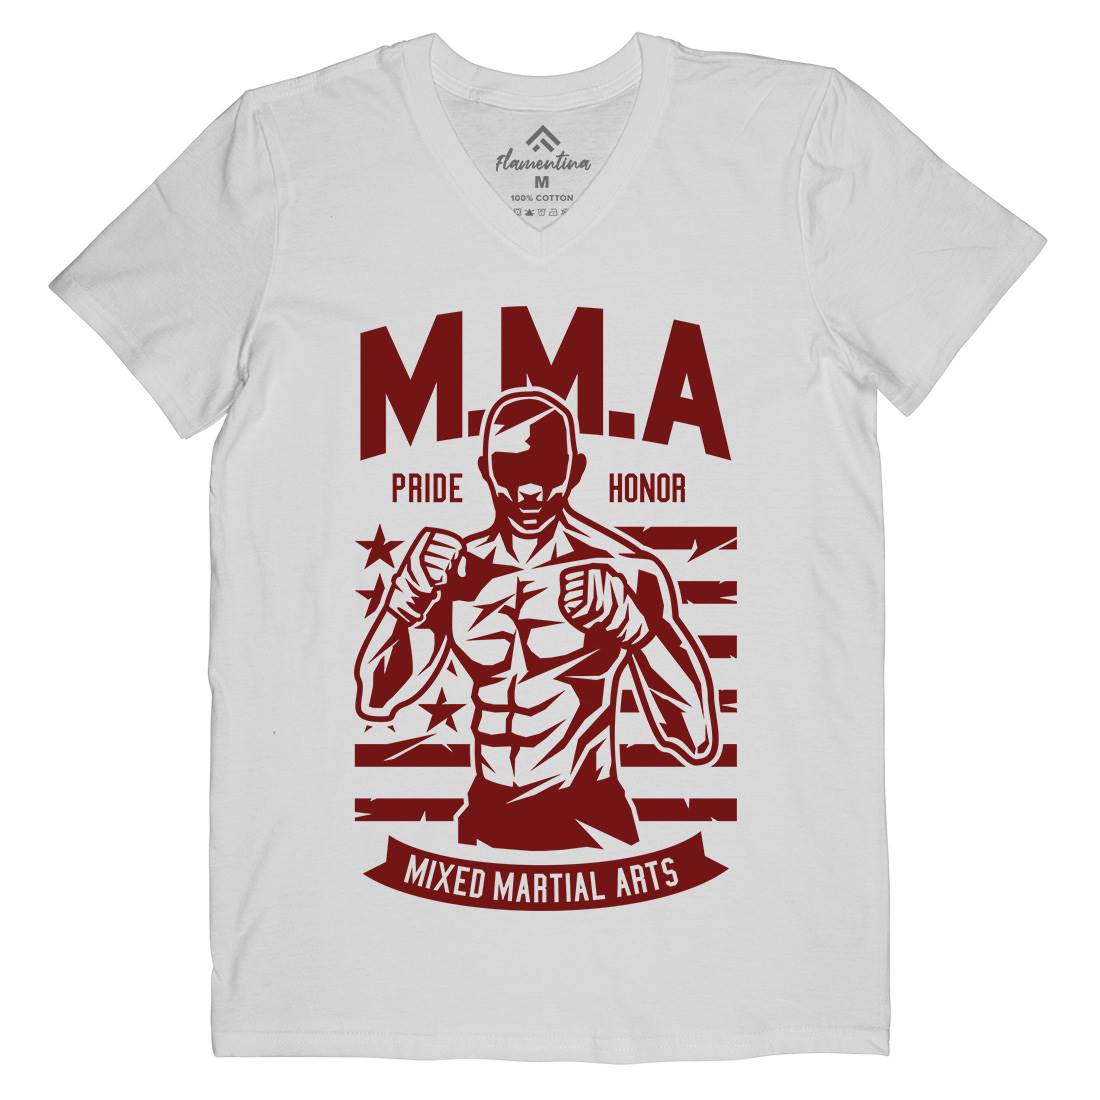 Mma Fighter Mens Organic V-Neck T-Shirt Sport A252